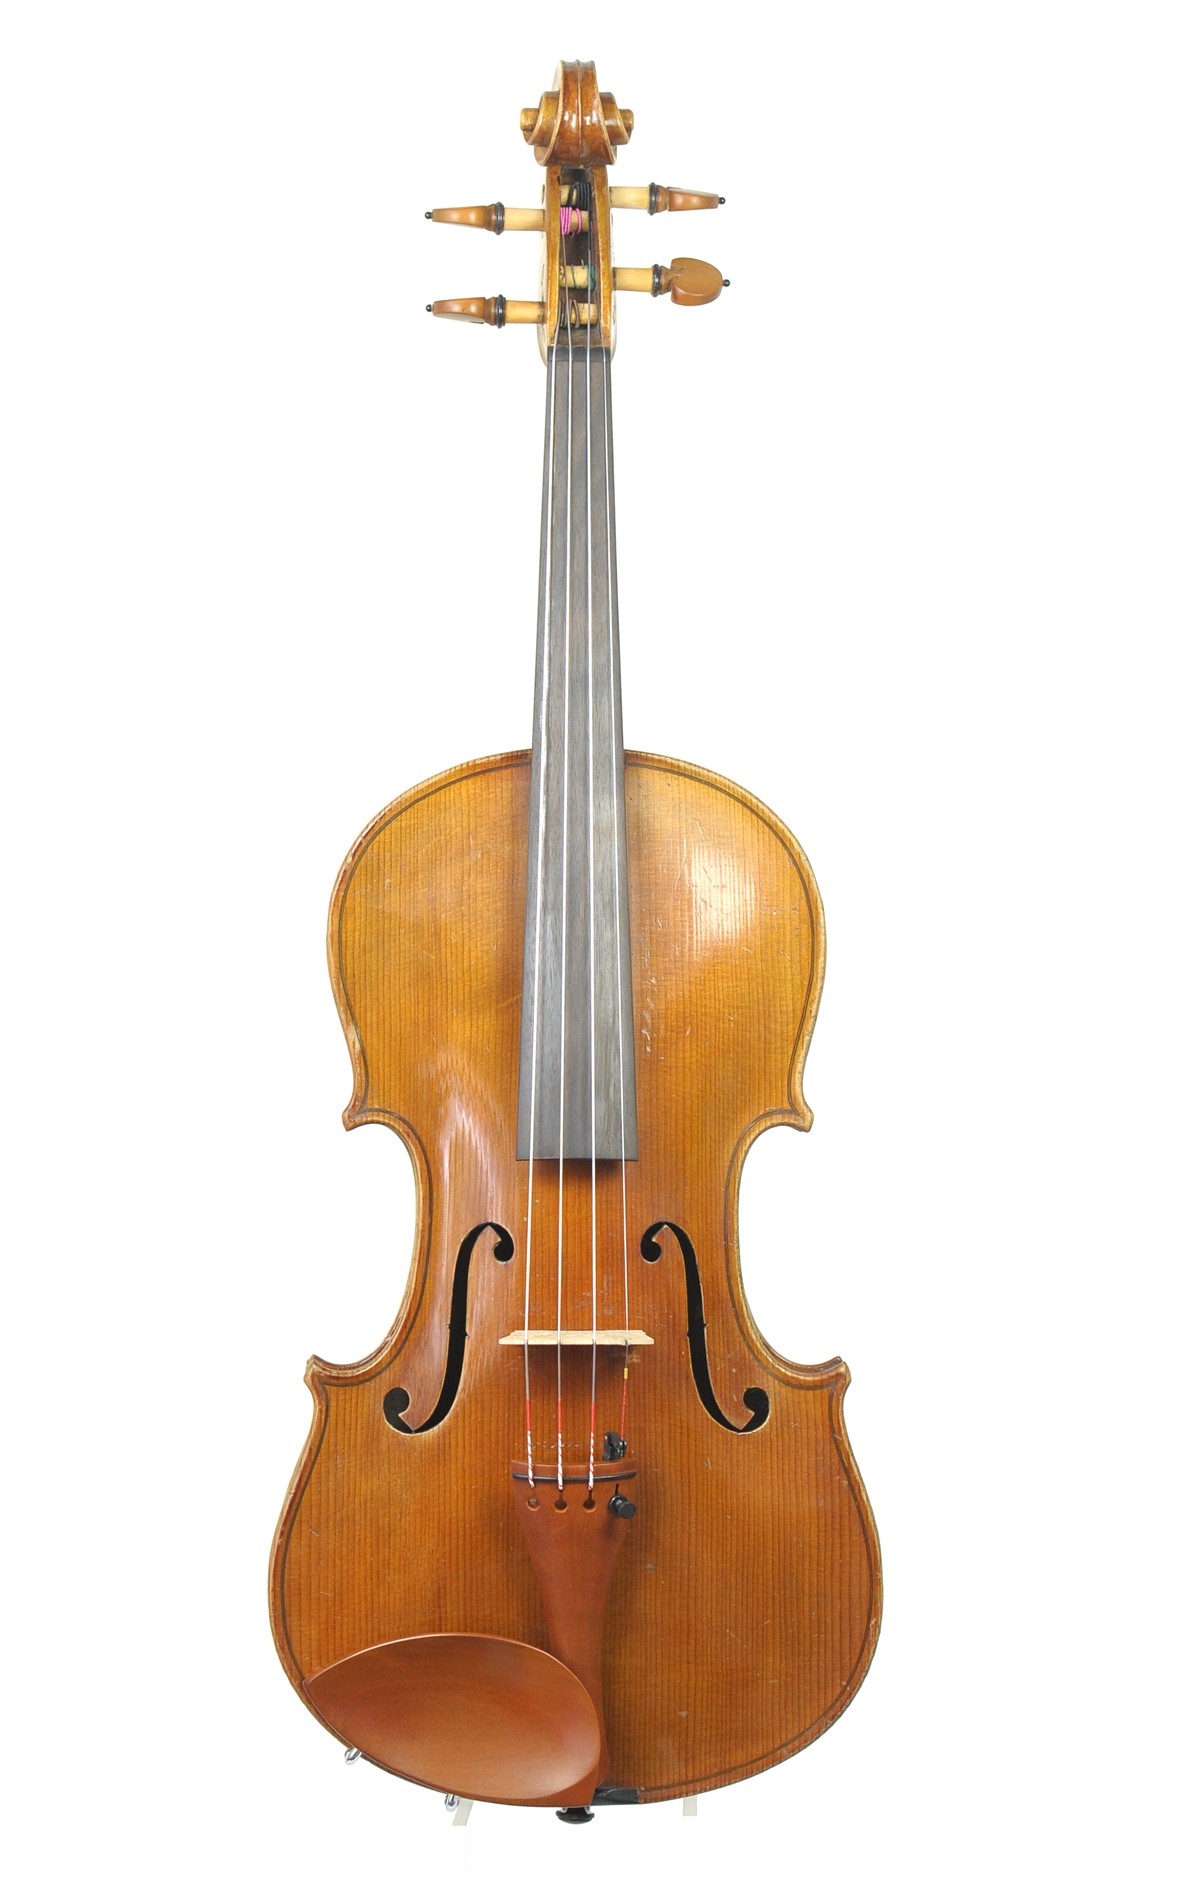 Antique German Saxon violin with a bright, warm tone, c.1920 - top